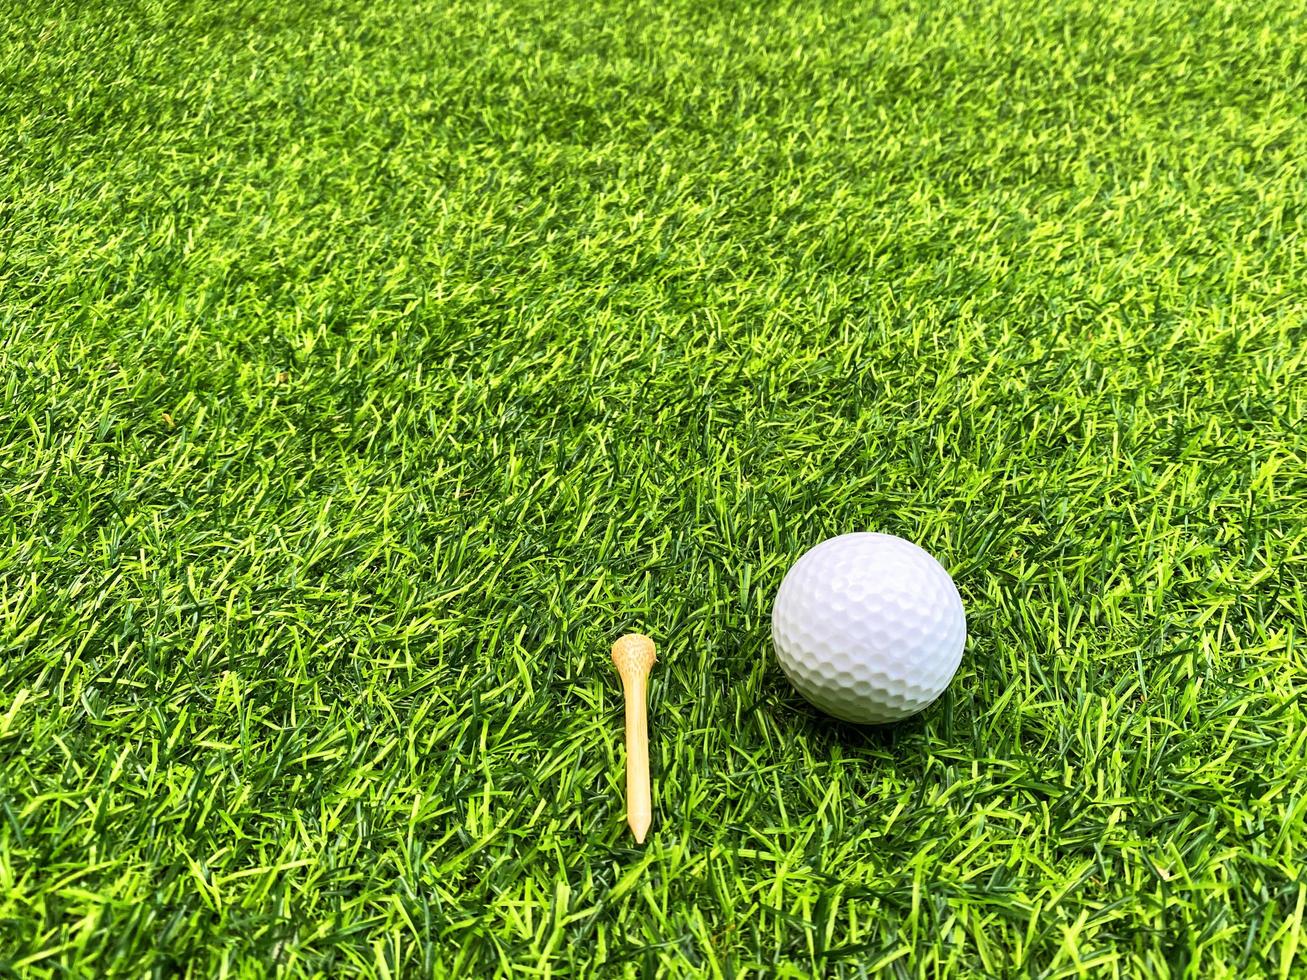 pelota de golf de cerca sobre hierba verde en un hermoso paisaje borroso de fondo de golf.concepto de deporte internacional que se basa en habilidades de precisión para la relajación de la salud. foto